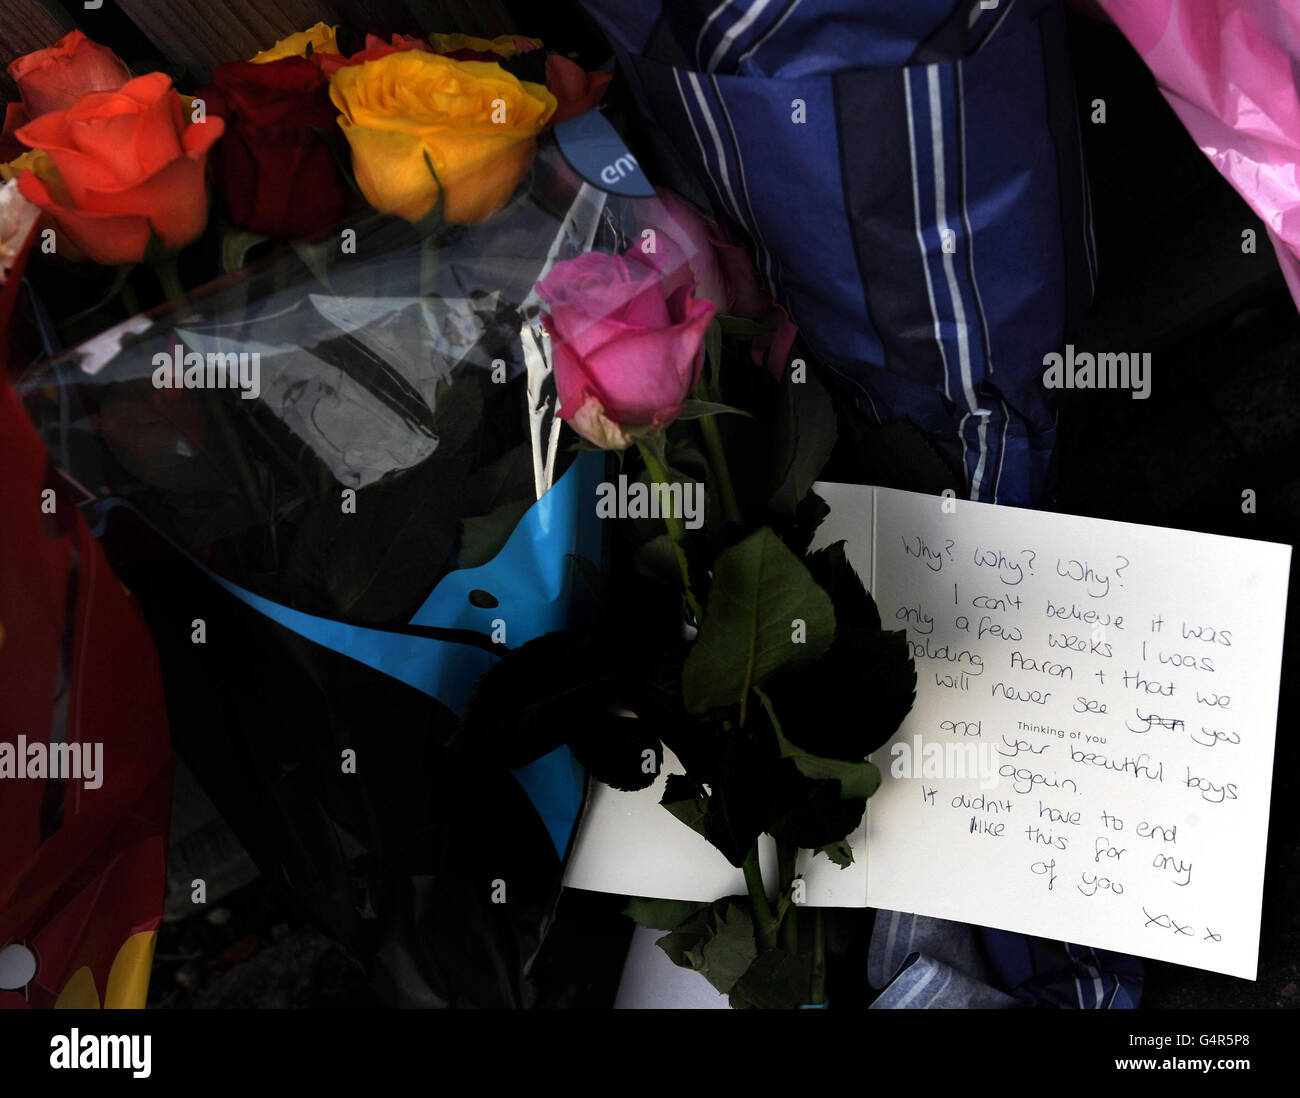 Blumenbotschaften und Botschaften, die bei der Szene in der Nähe des Hauses in Pudsey, Leeds, hinterlassen wurden, wo am späten Sonntagnachmittag vier Leichen entdeckt wurden. Stockfoto